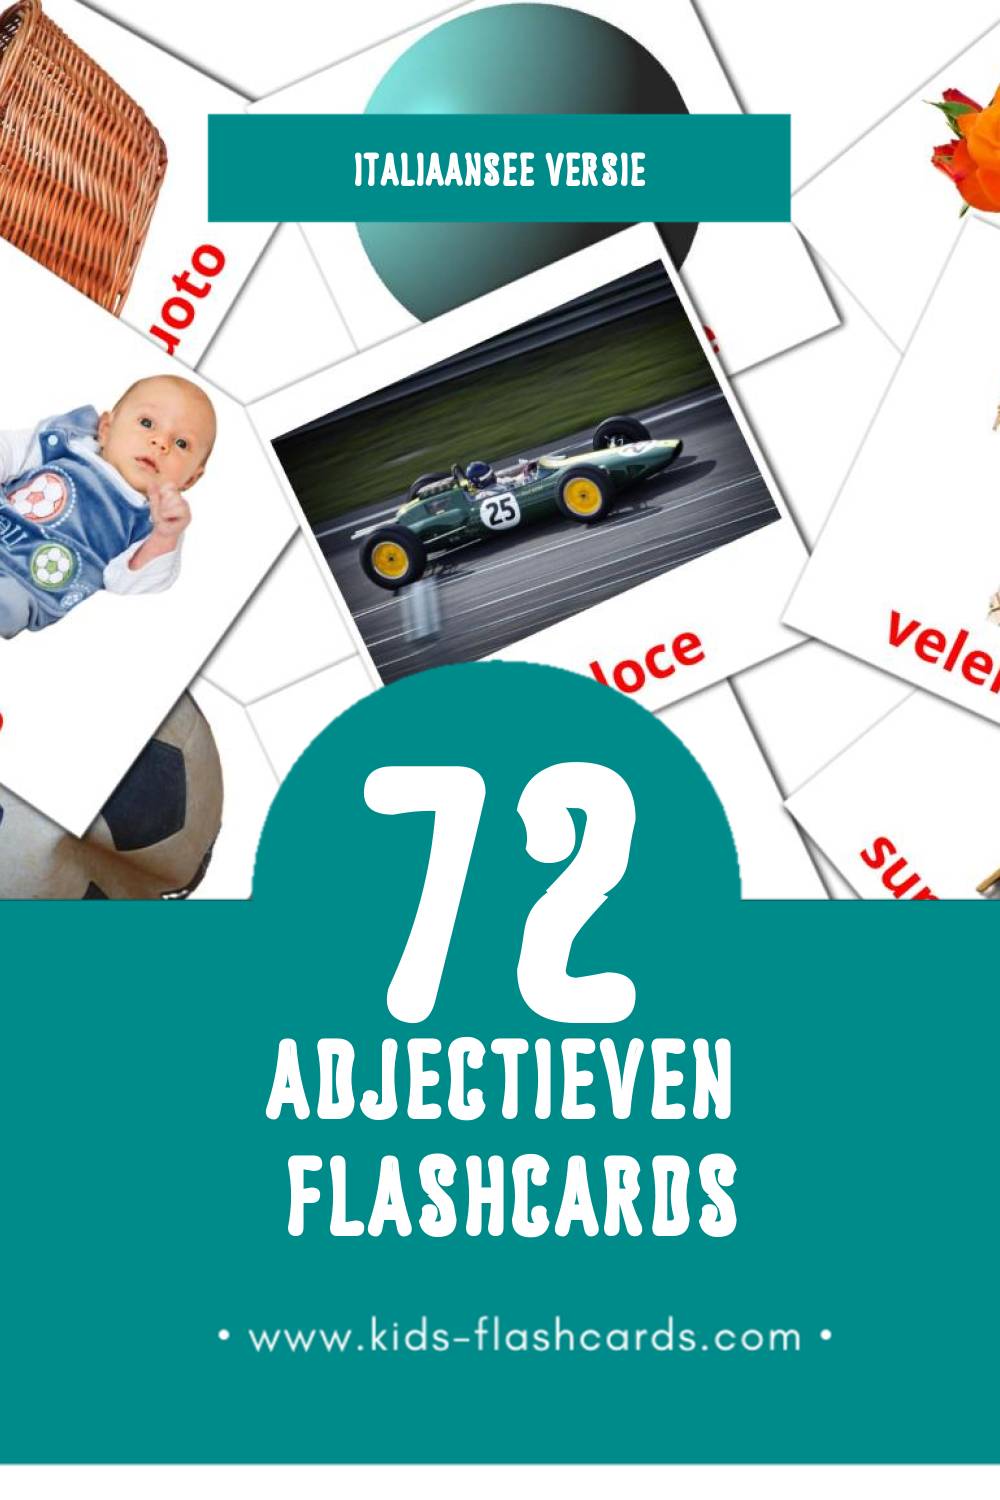 Visuele Aggettivi Flashcards voor Kleuters (72 kaarten in het Italiaanse)